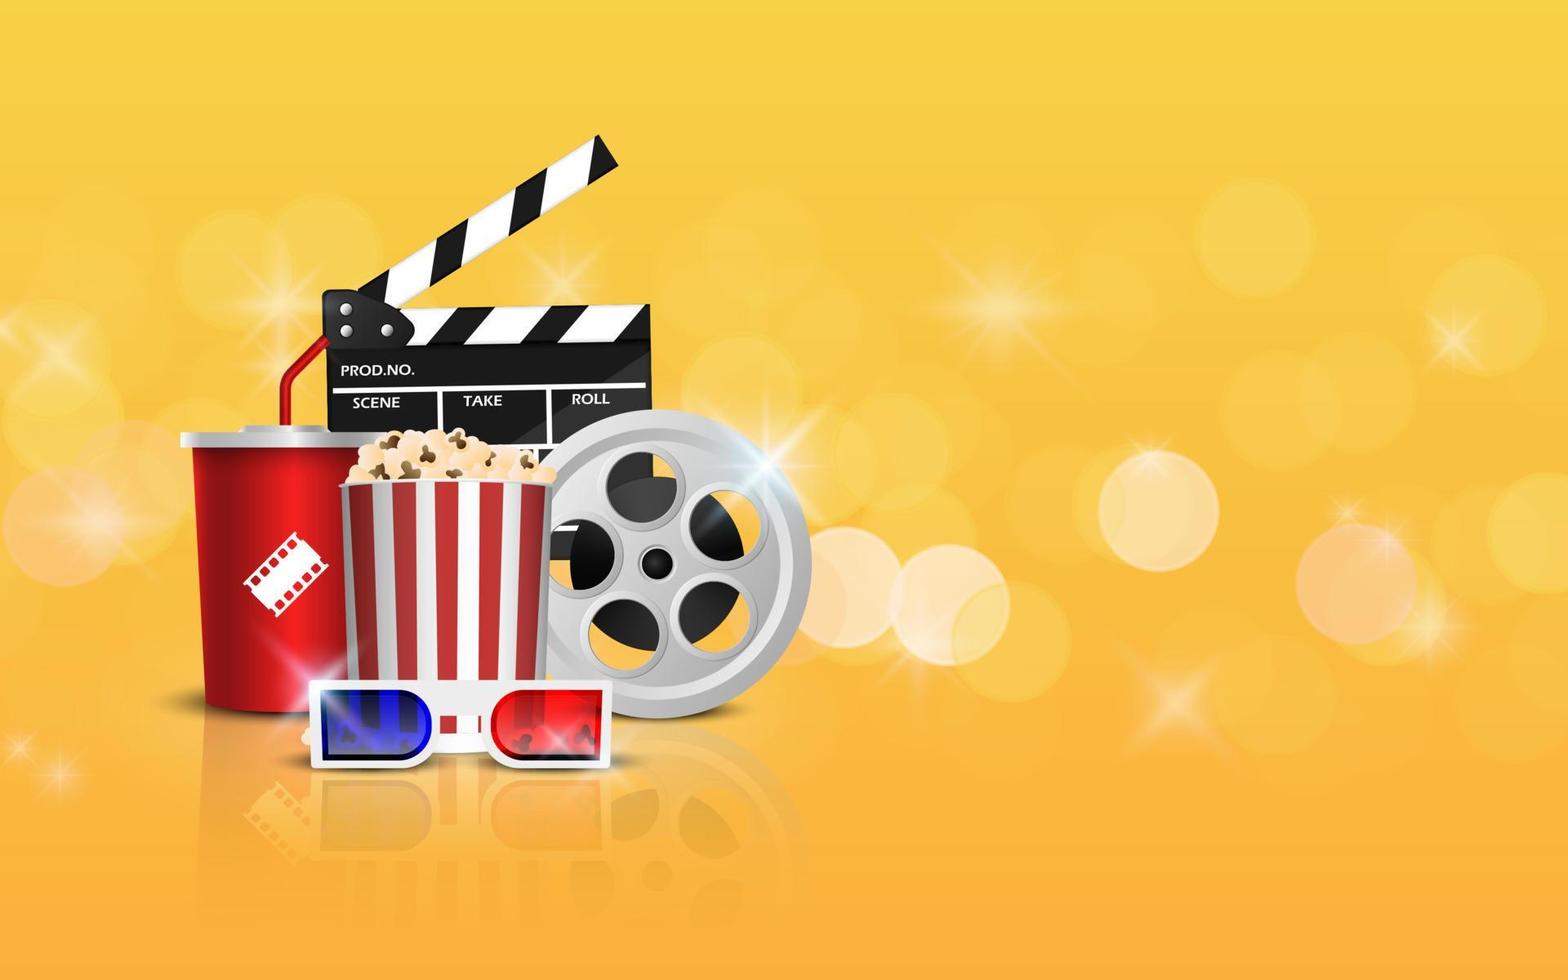 Filmbanner-Designvorlage, Kinohintergrundkonzept, Kinokonzept mit Popcorn, Filmstreifen und Filmklöppel auf gelbem Hintergrund, Vektorillustration vektor